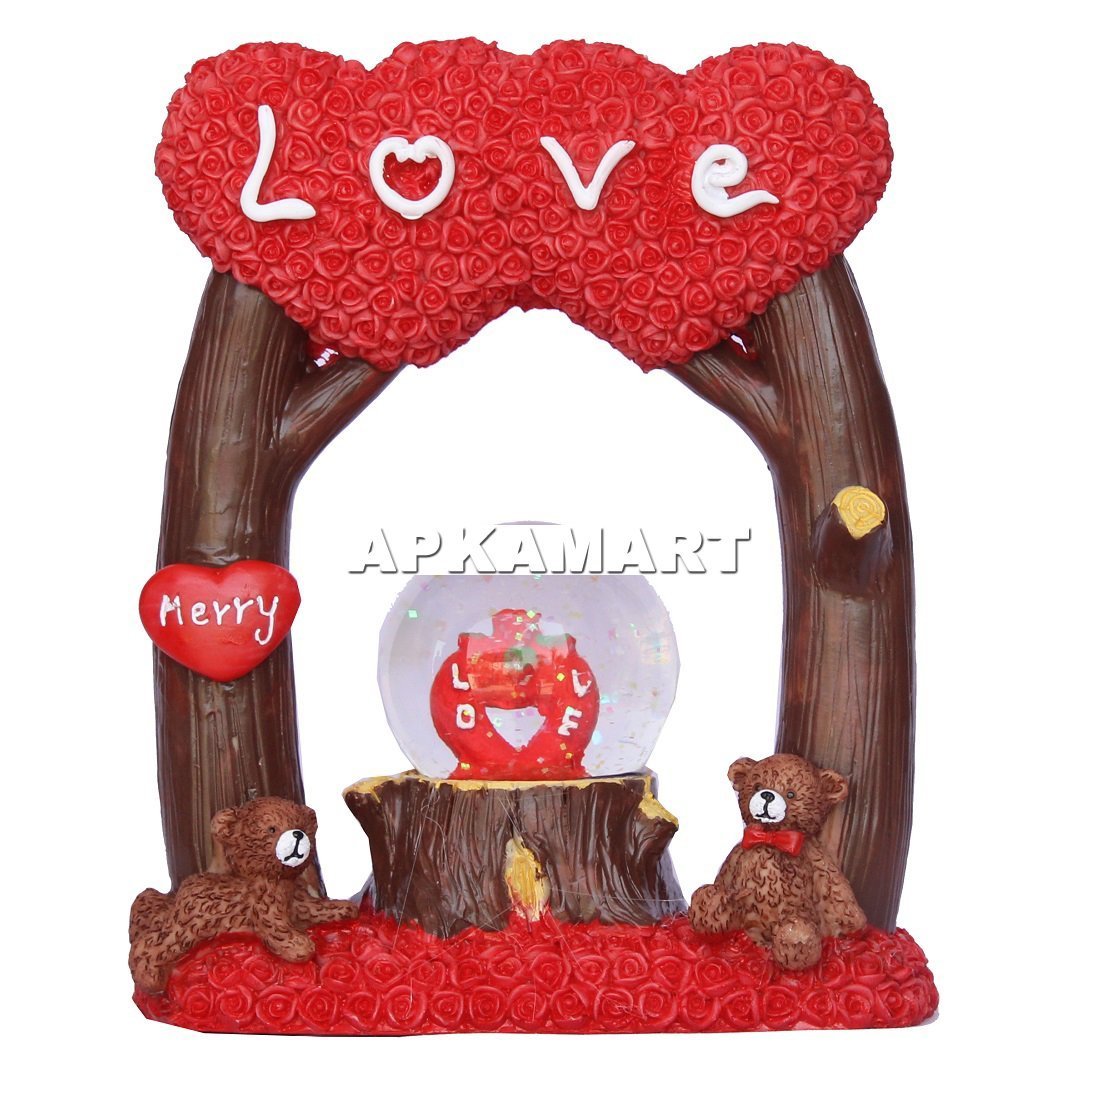 Send/Buy Love Gifts Hamper Online | FloraIndia